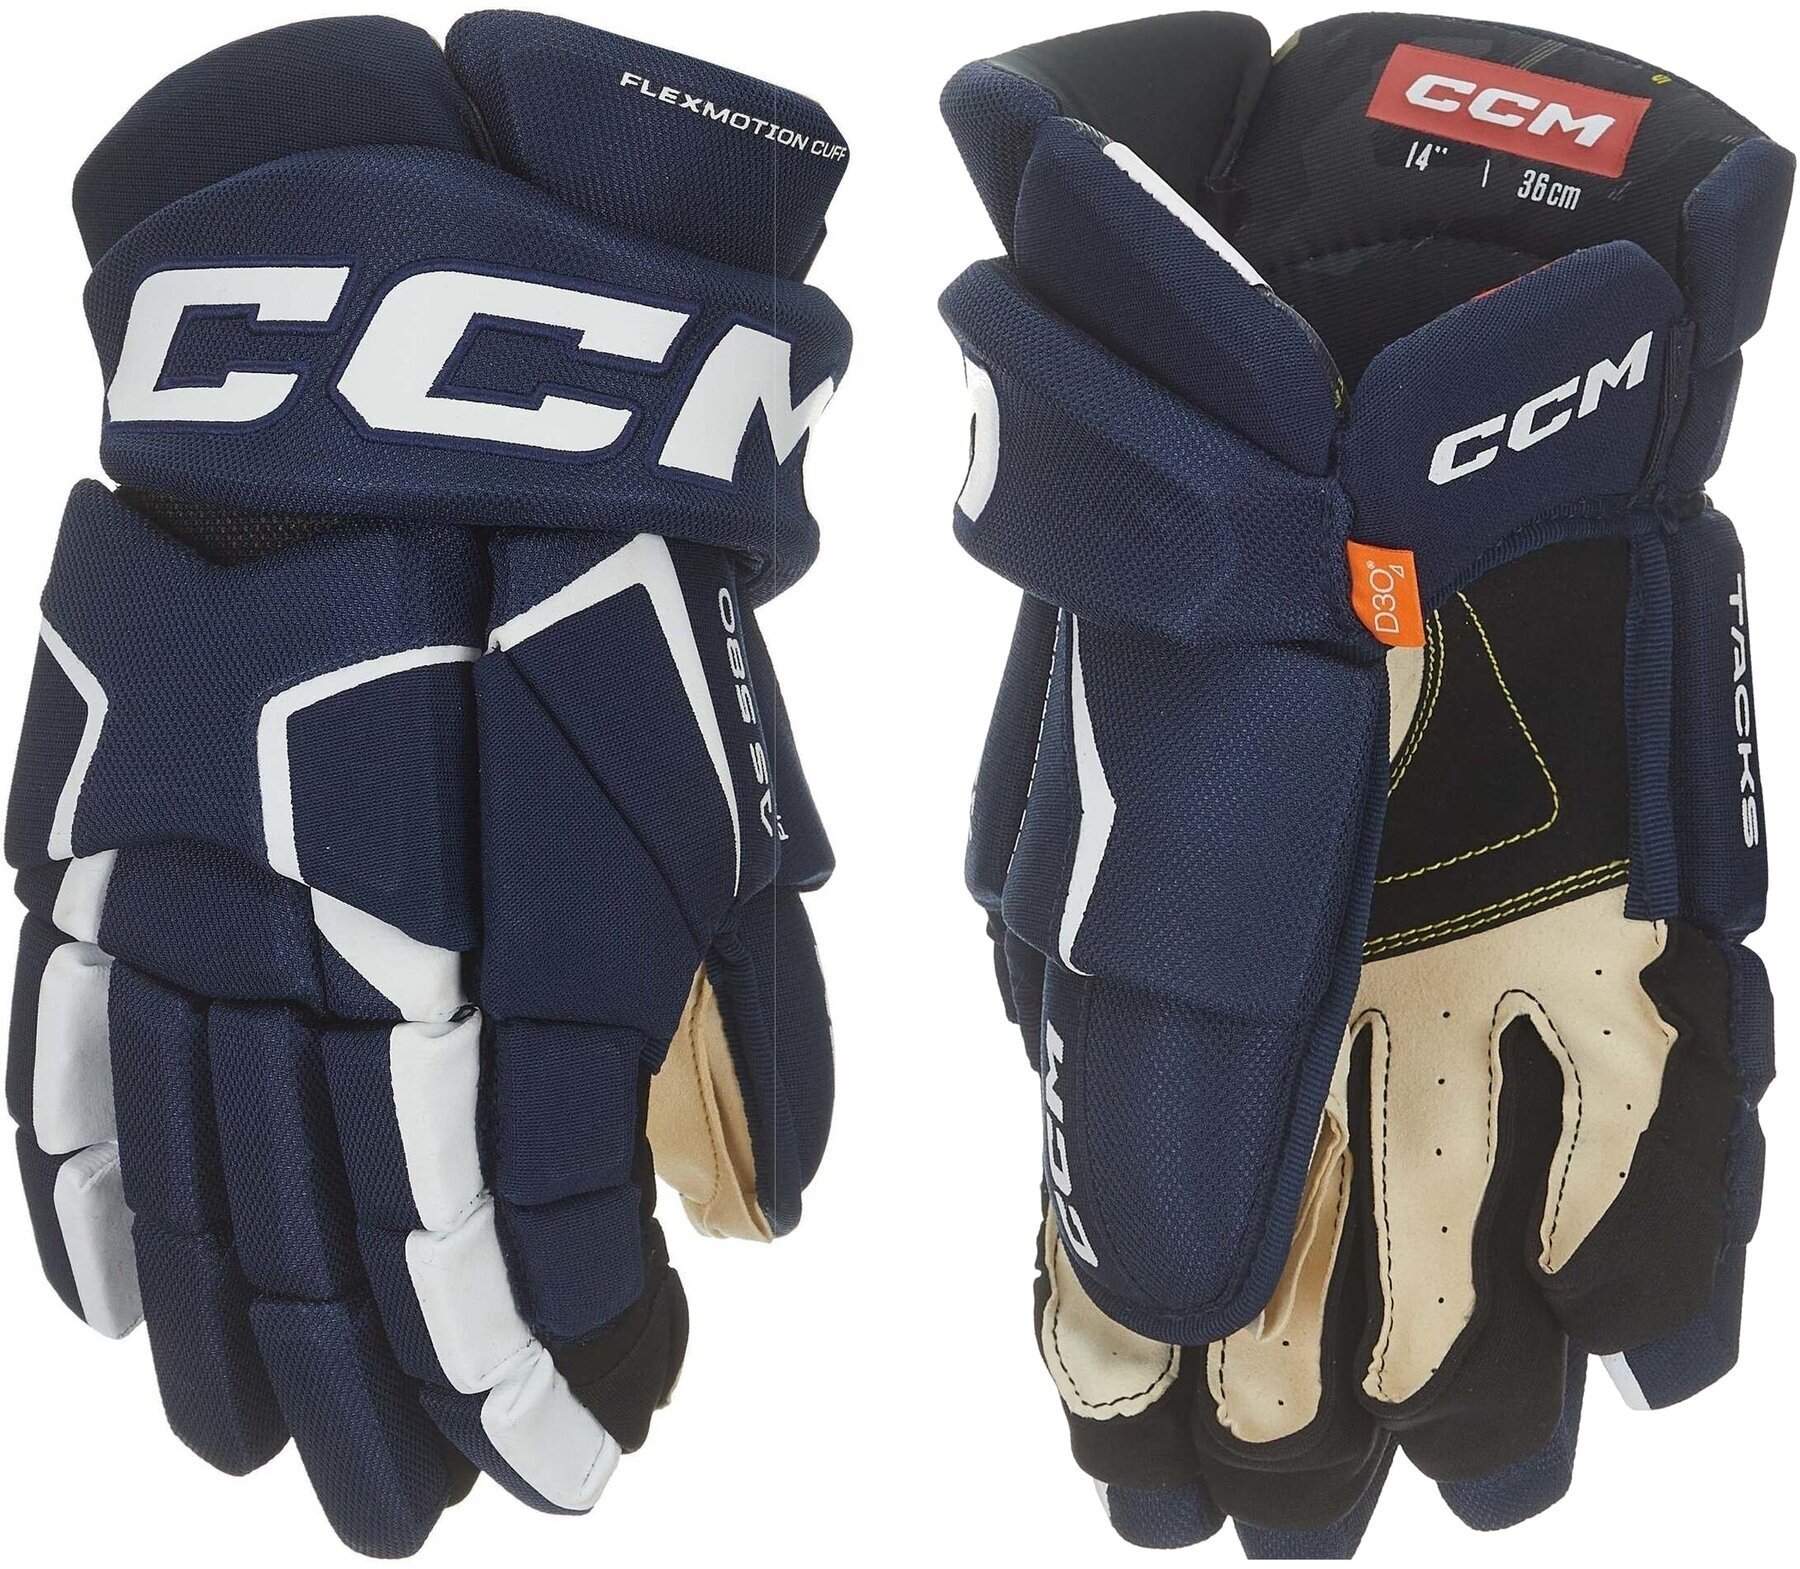 Hockey Gloves CCM Tacks AS 580 SR 15 Navy/White Hockey Gloves